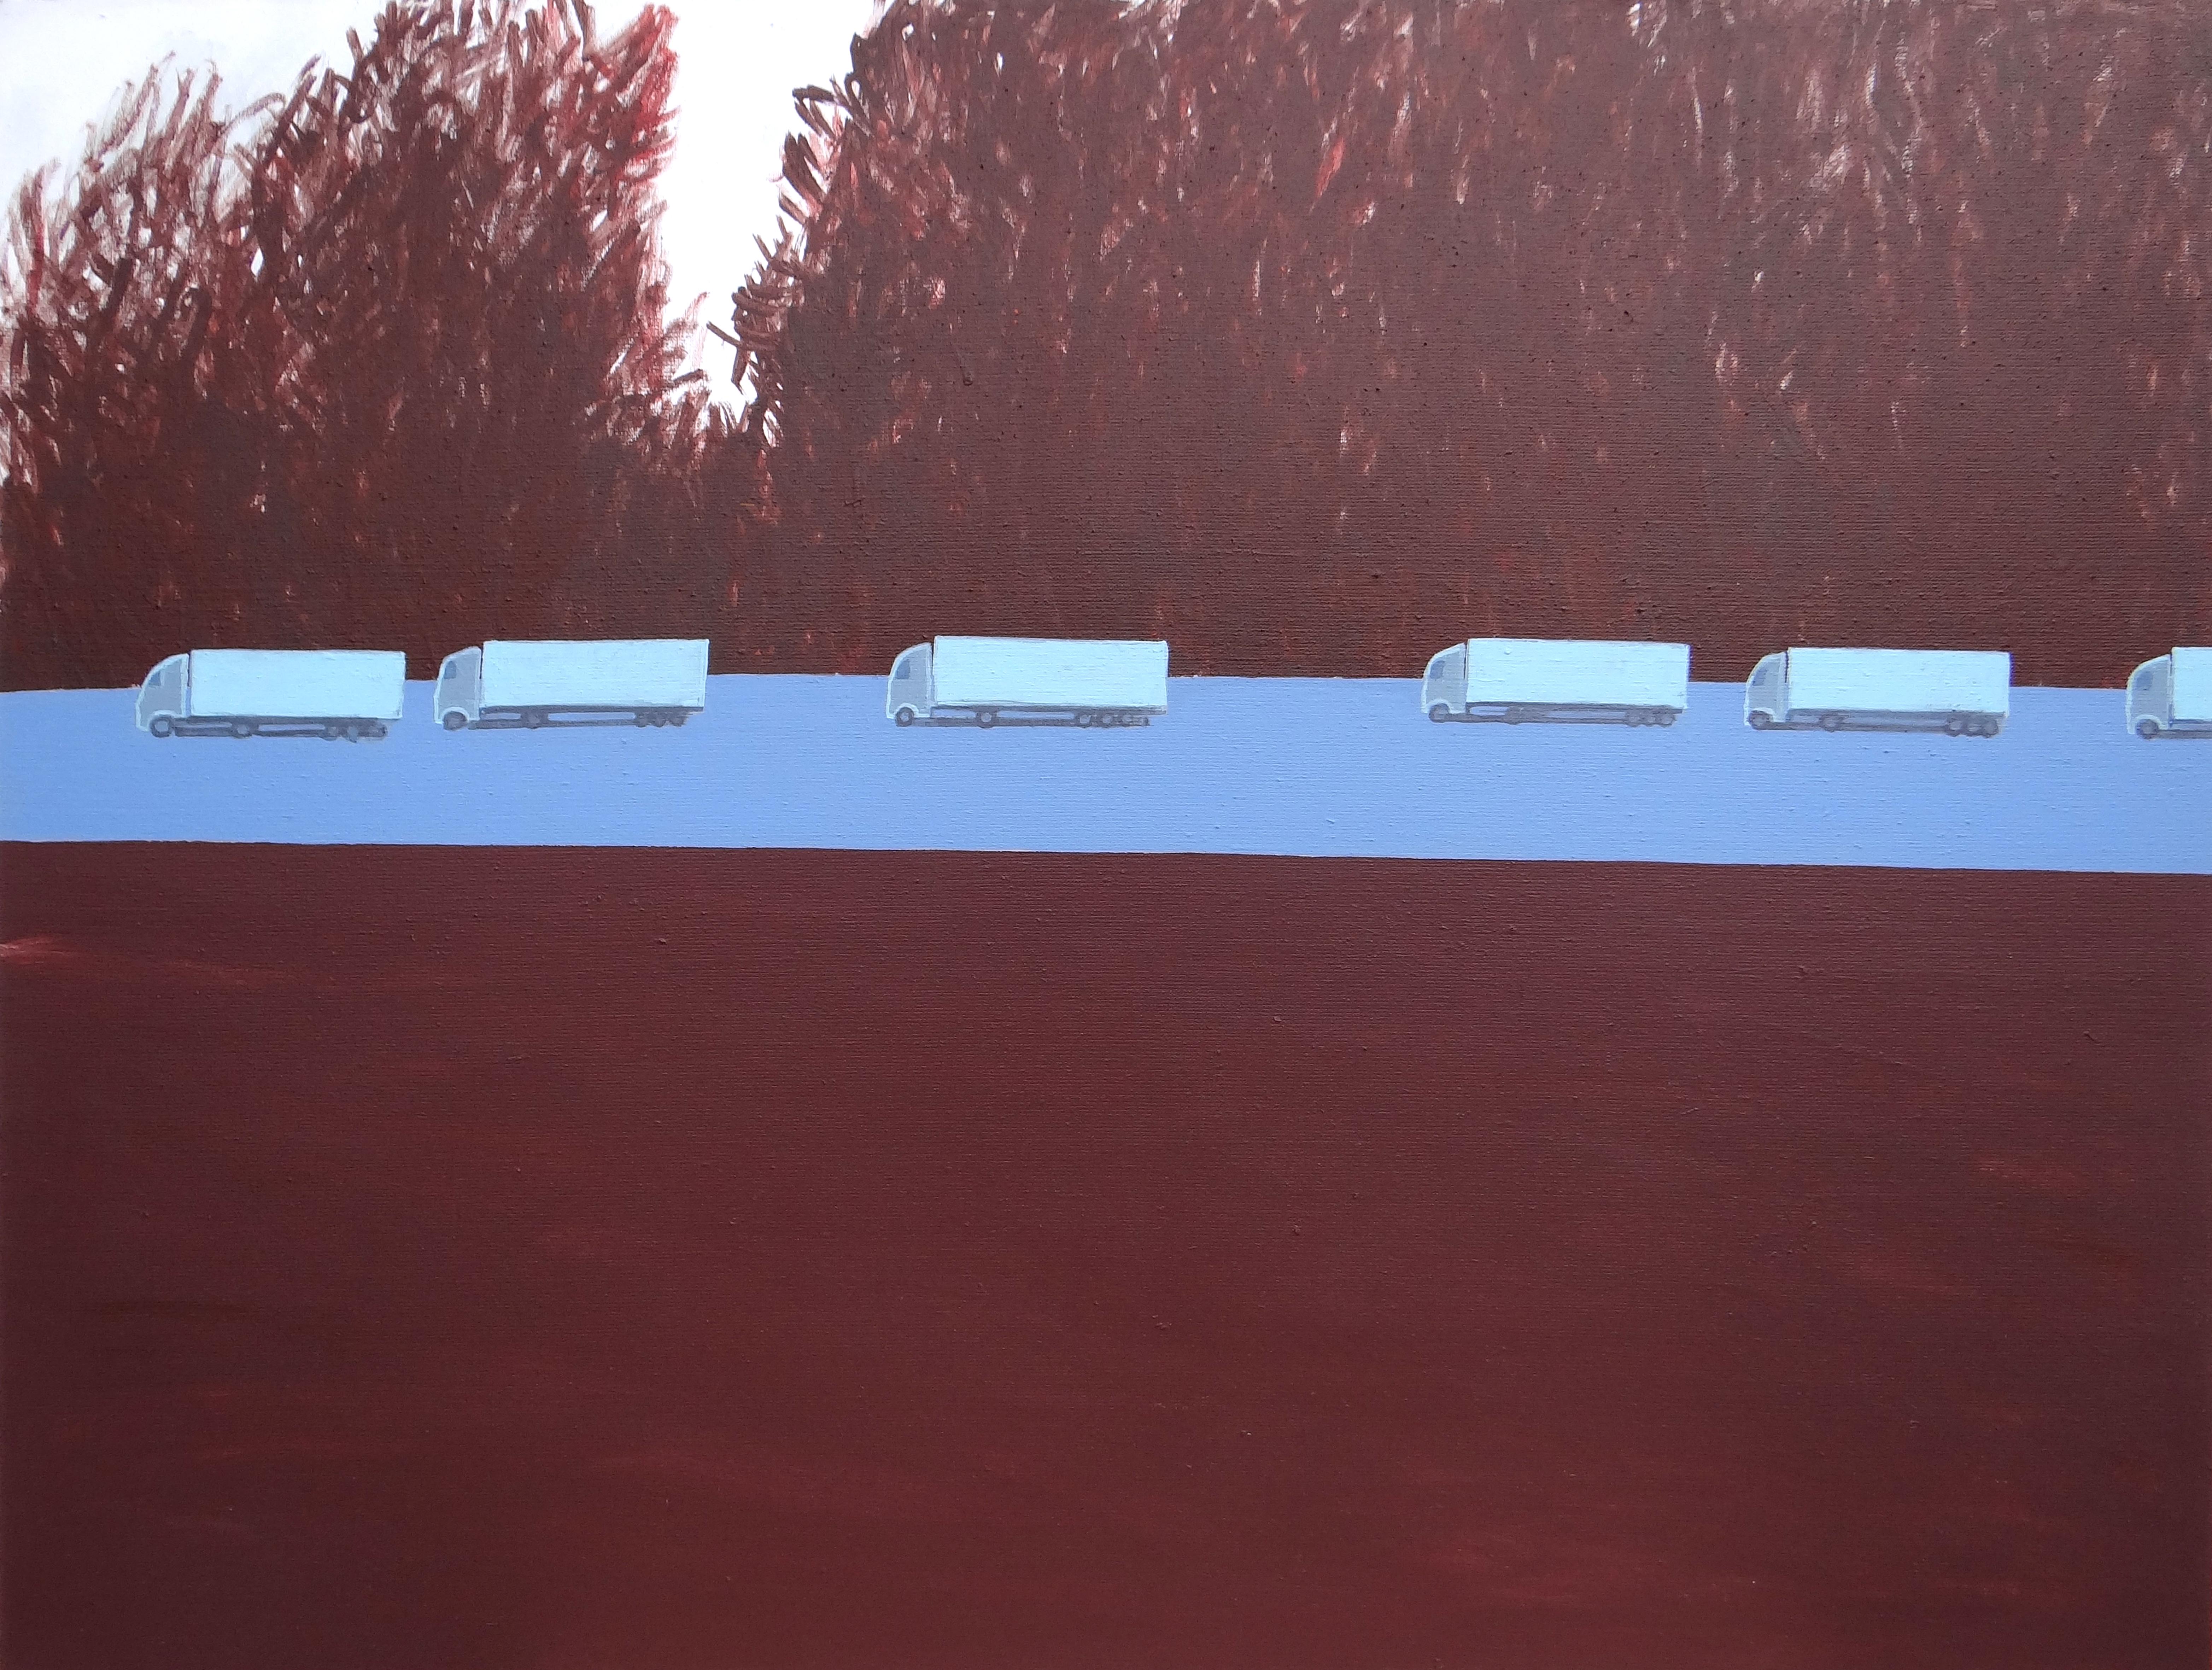 Figurative Painting Joanna Mrozowska - Colonne de camions 1 - Peinture expressive contemporaine de paysage, avenue des arbres